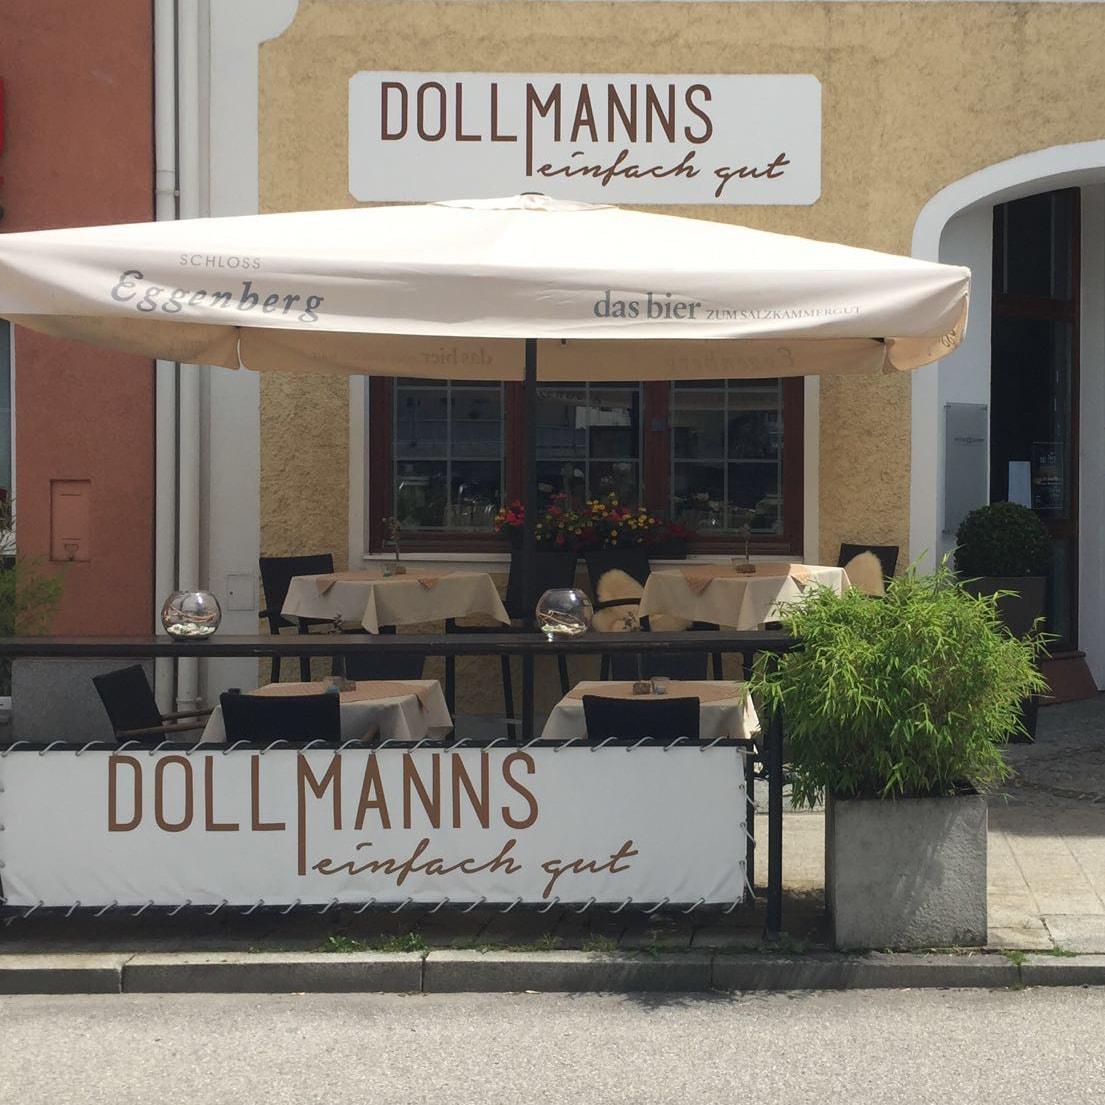 Restaurant "Dollmanns" in Gmunden